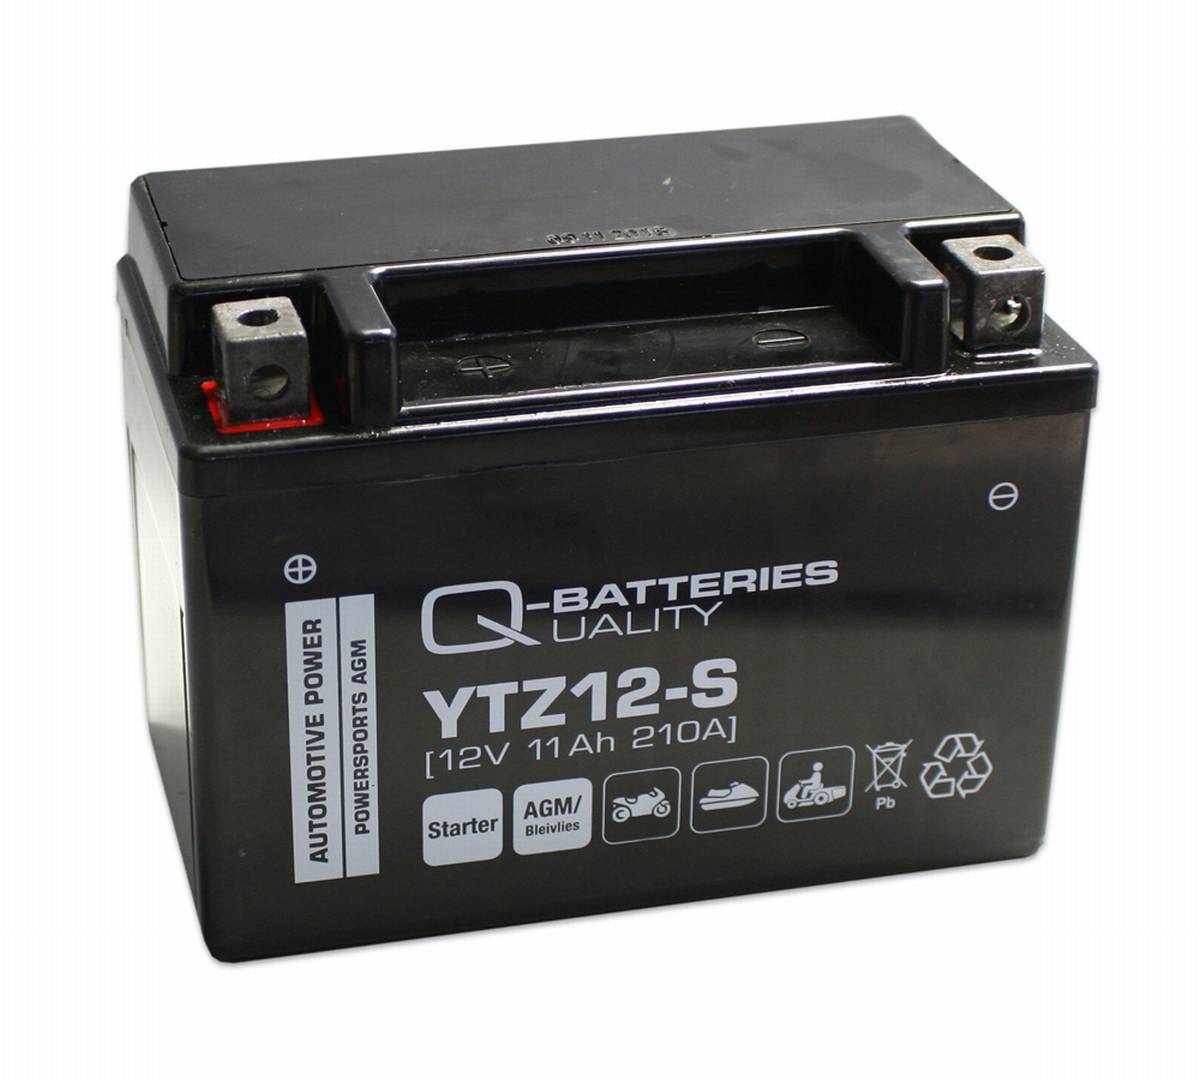 Q-Batteries Motorradbatterie YTZ12-S 51121 AGM 12V 11Ah 210A